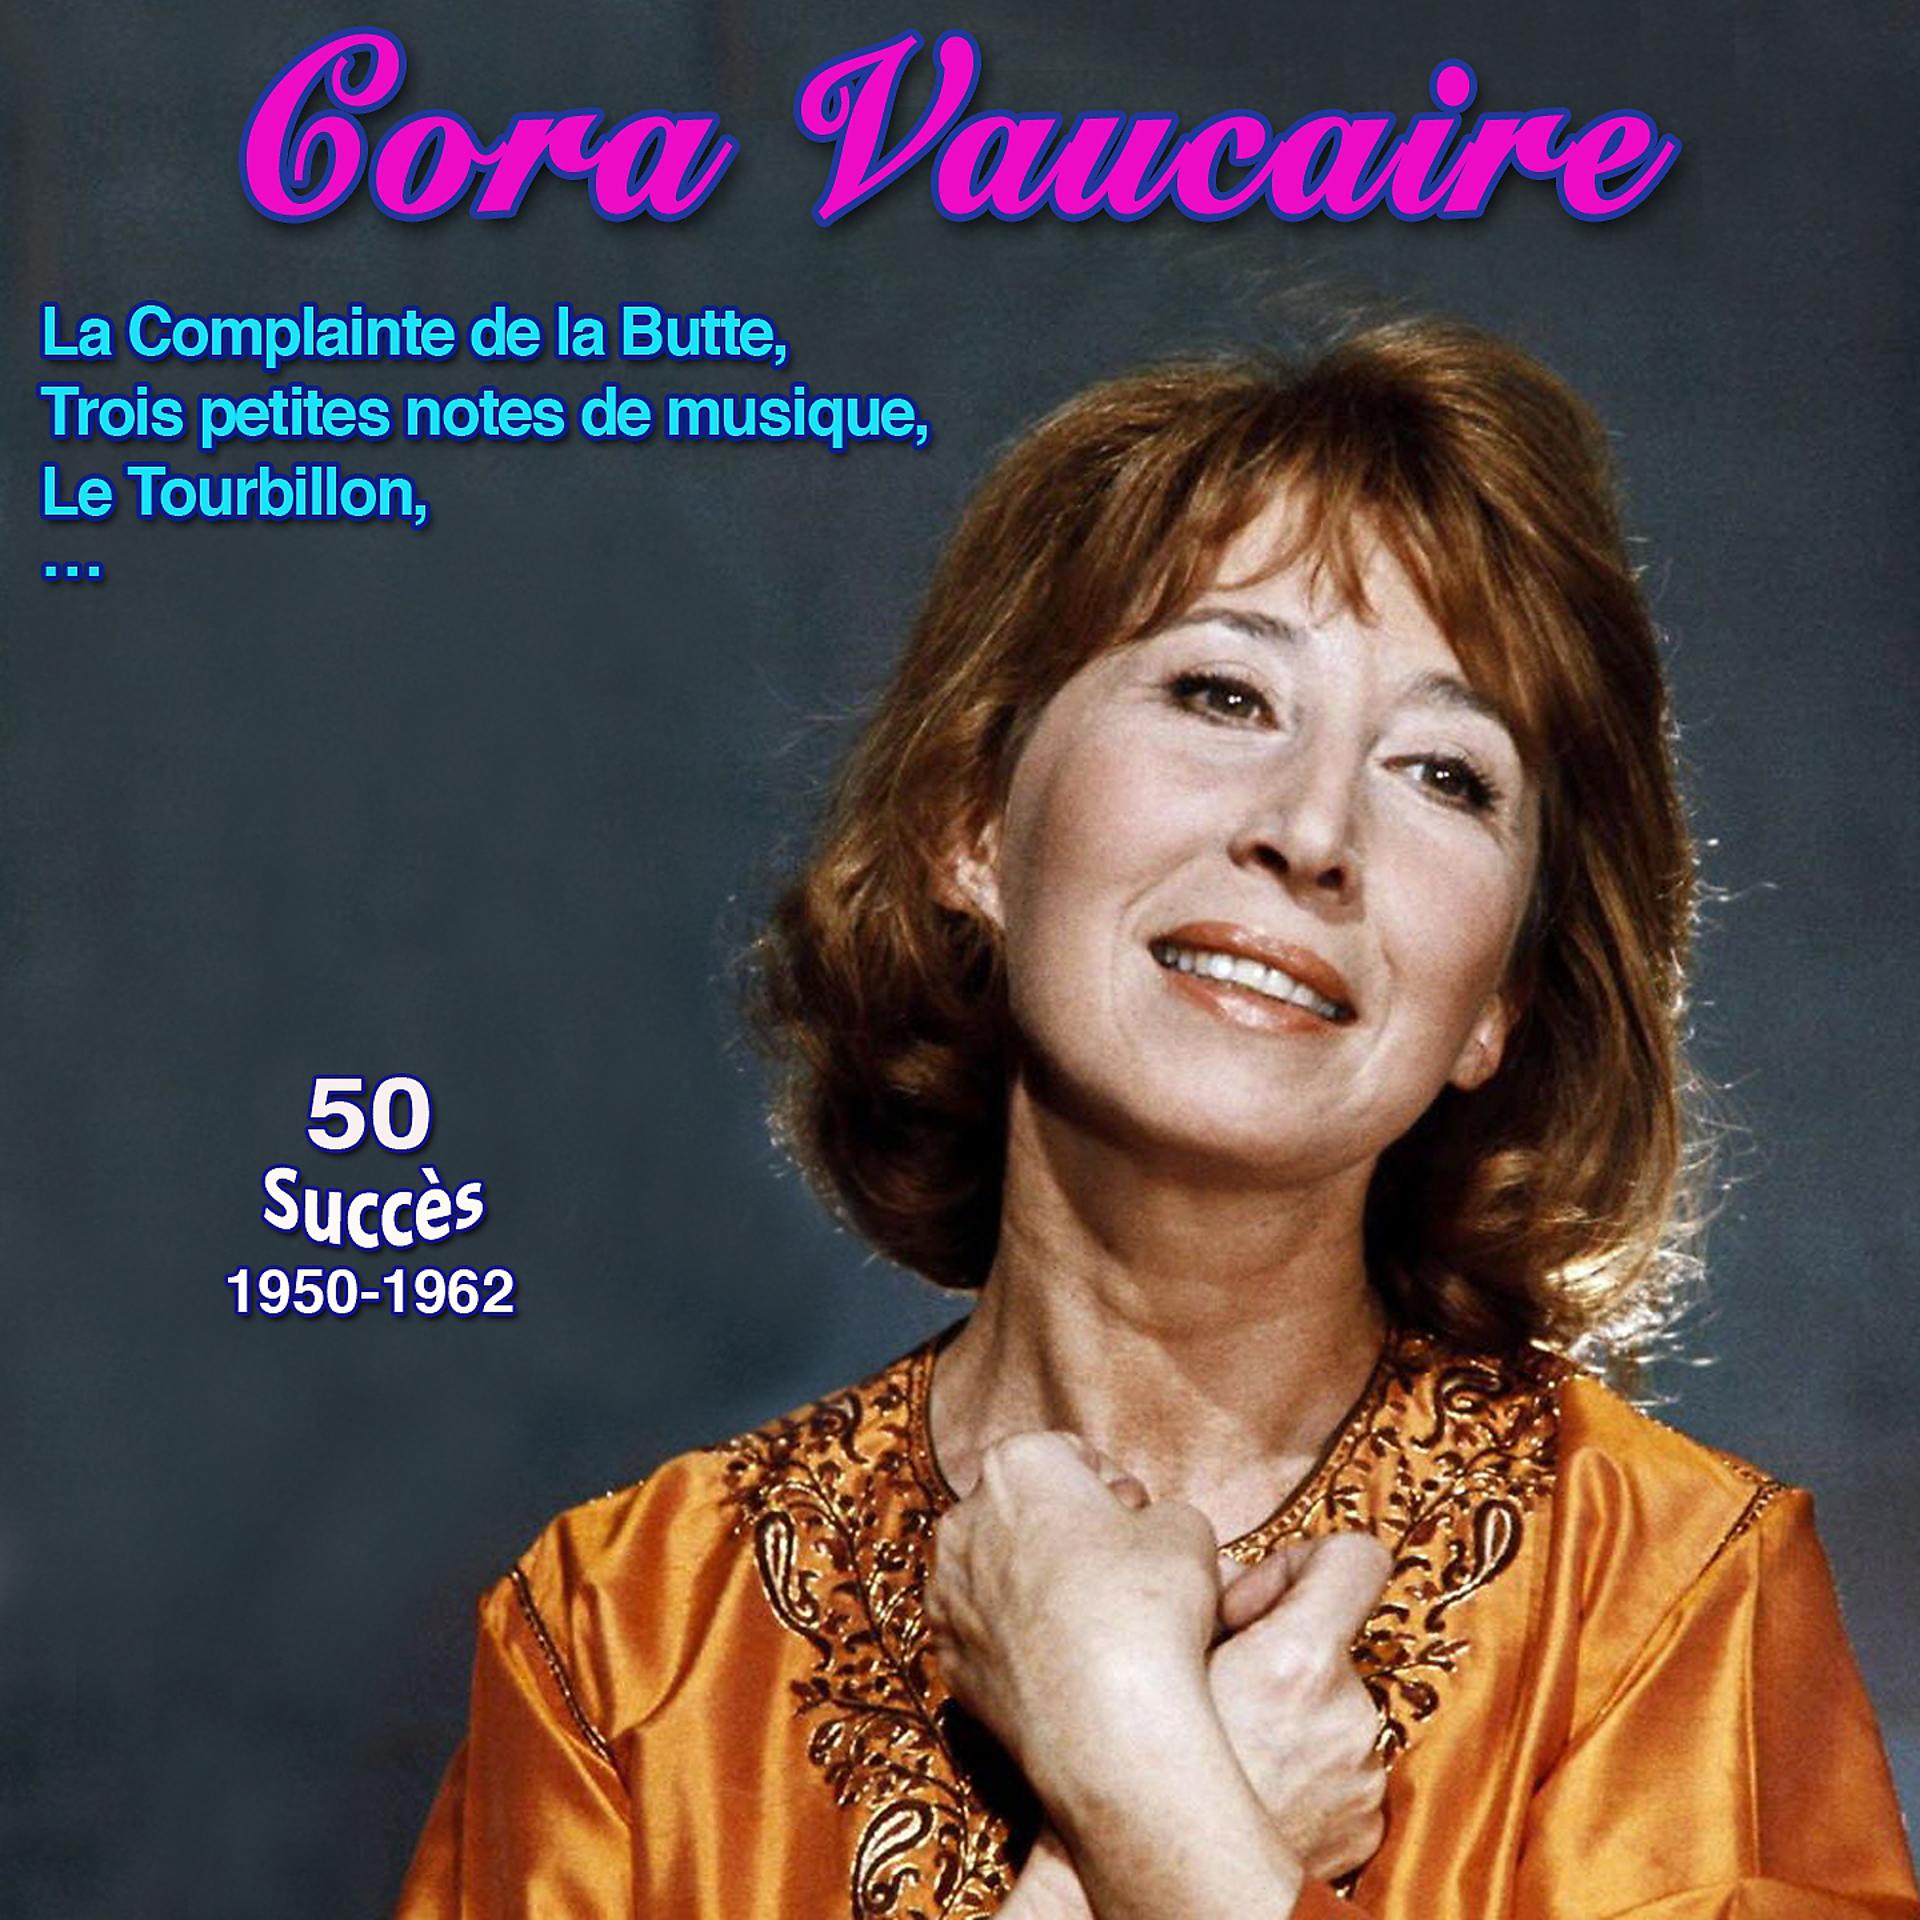 Постер альбома Cora vaucaire - "La dame Blanche de Saint-Germain-des-prés" La complainte de la butte 50 succès 1950-1962